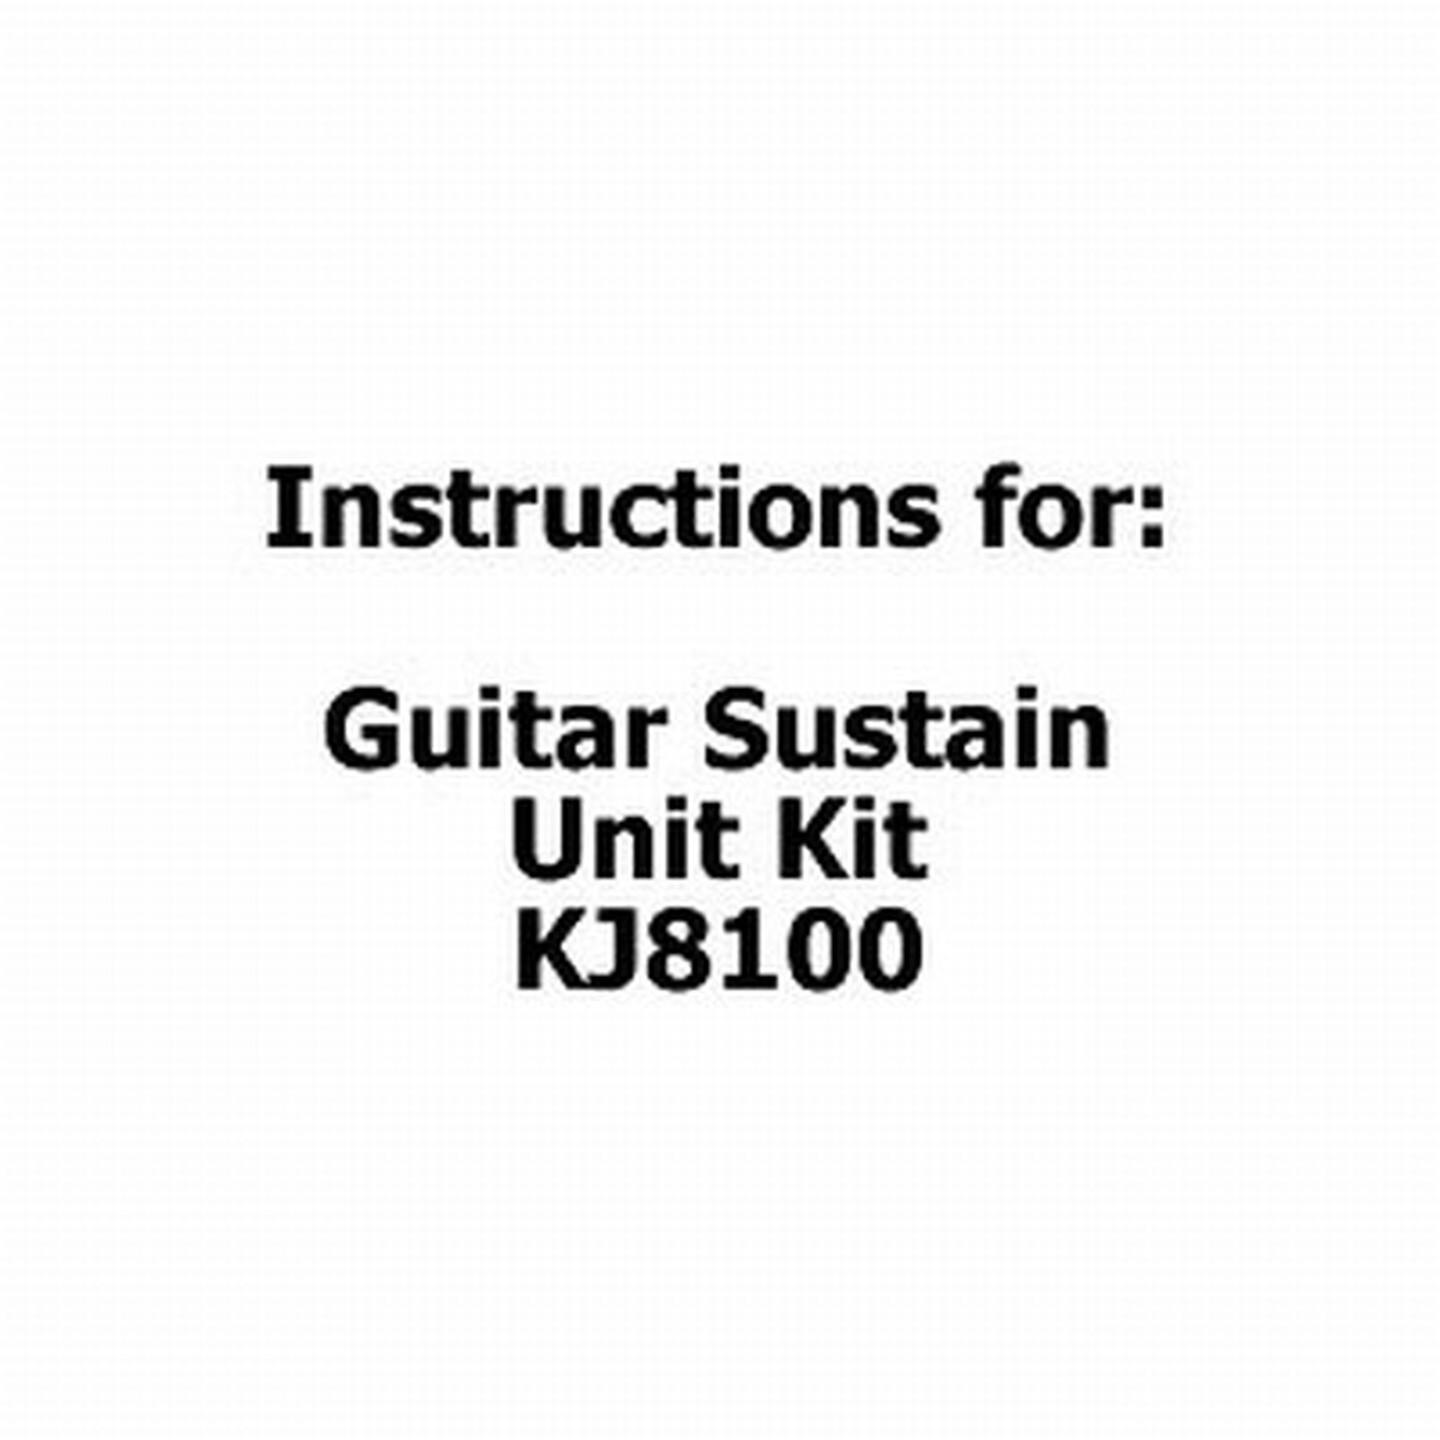 Instructions for Guitar Sustain Unit Kit - KJ8100